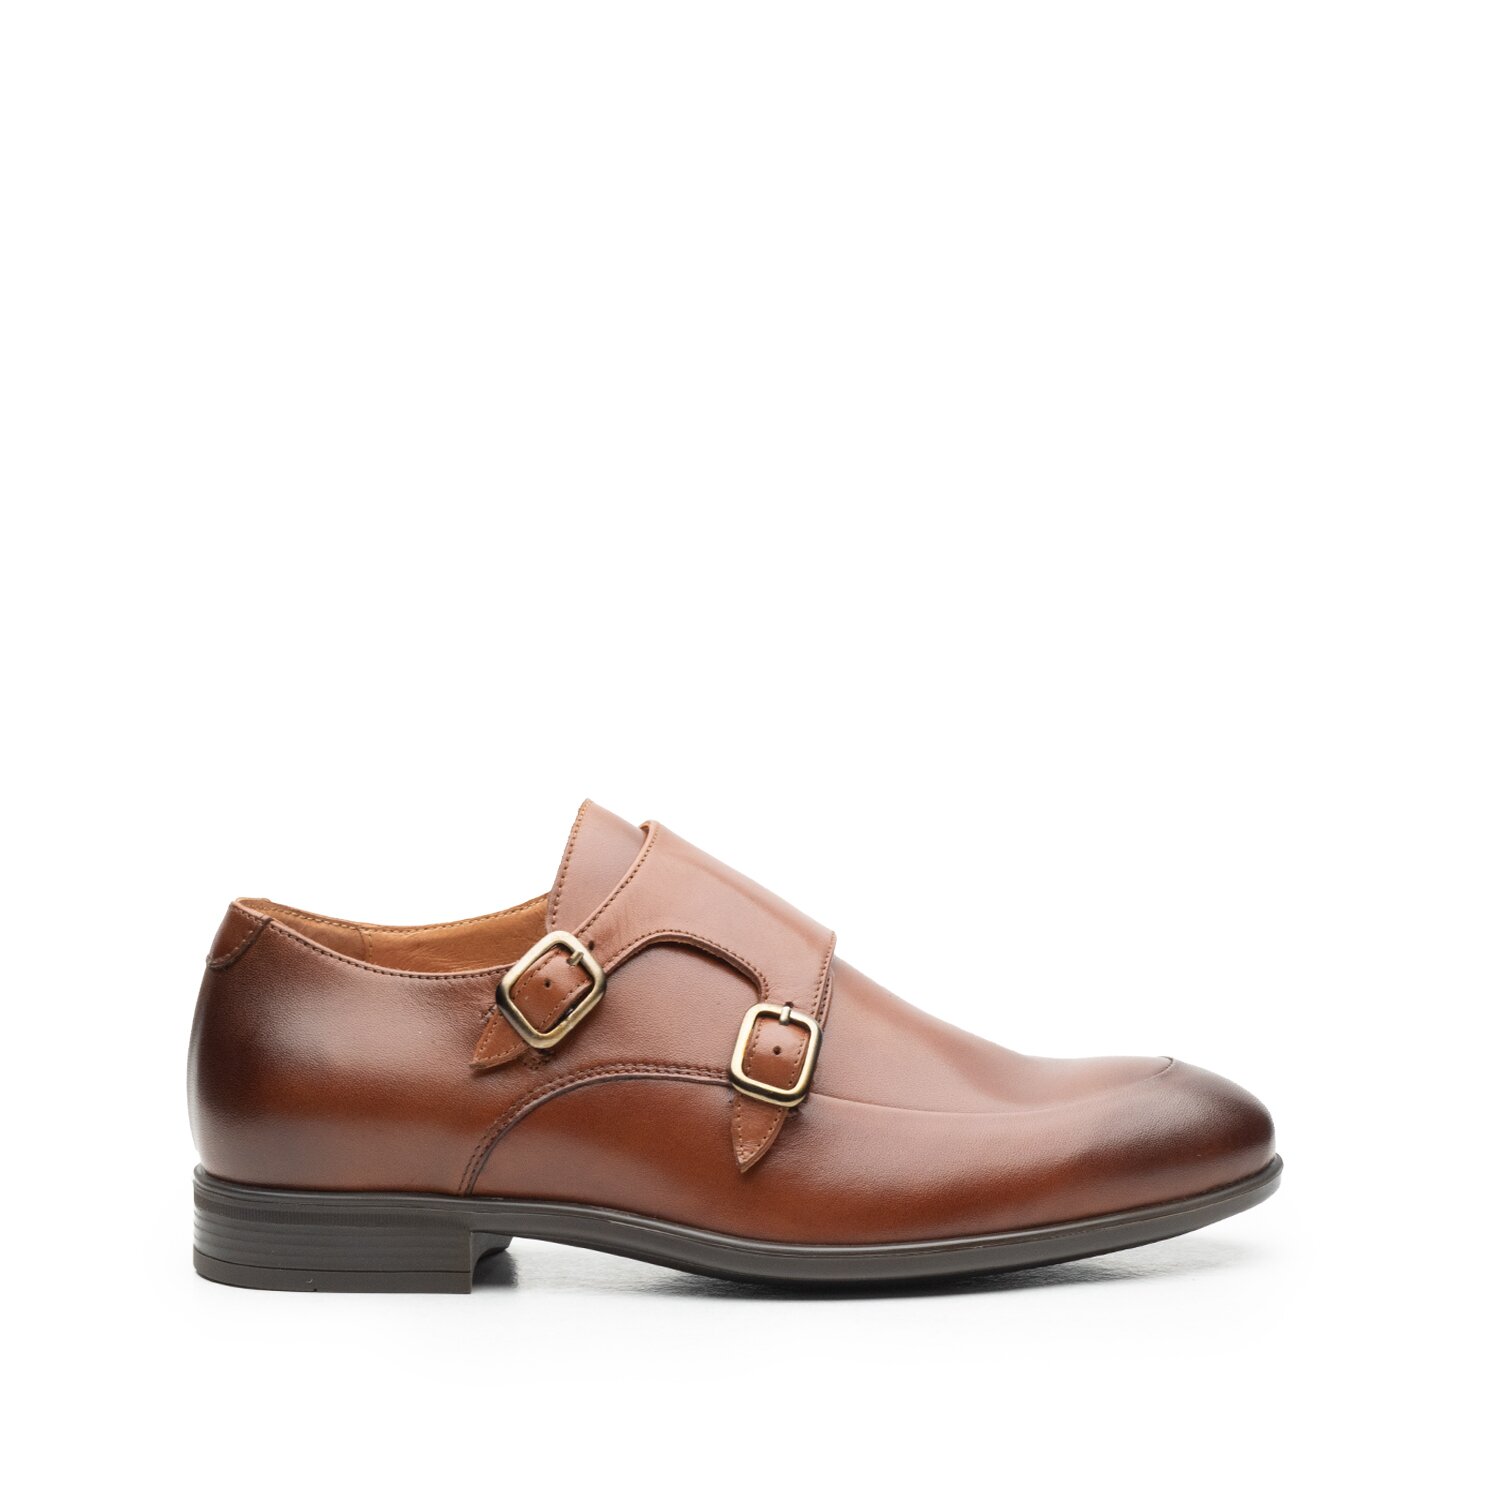 Pantofi eleganţi bărbaţi, cu catarame din piele naturală, Leofex - 576-1 Cognac Box